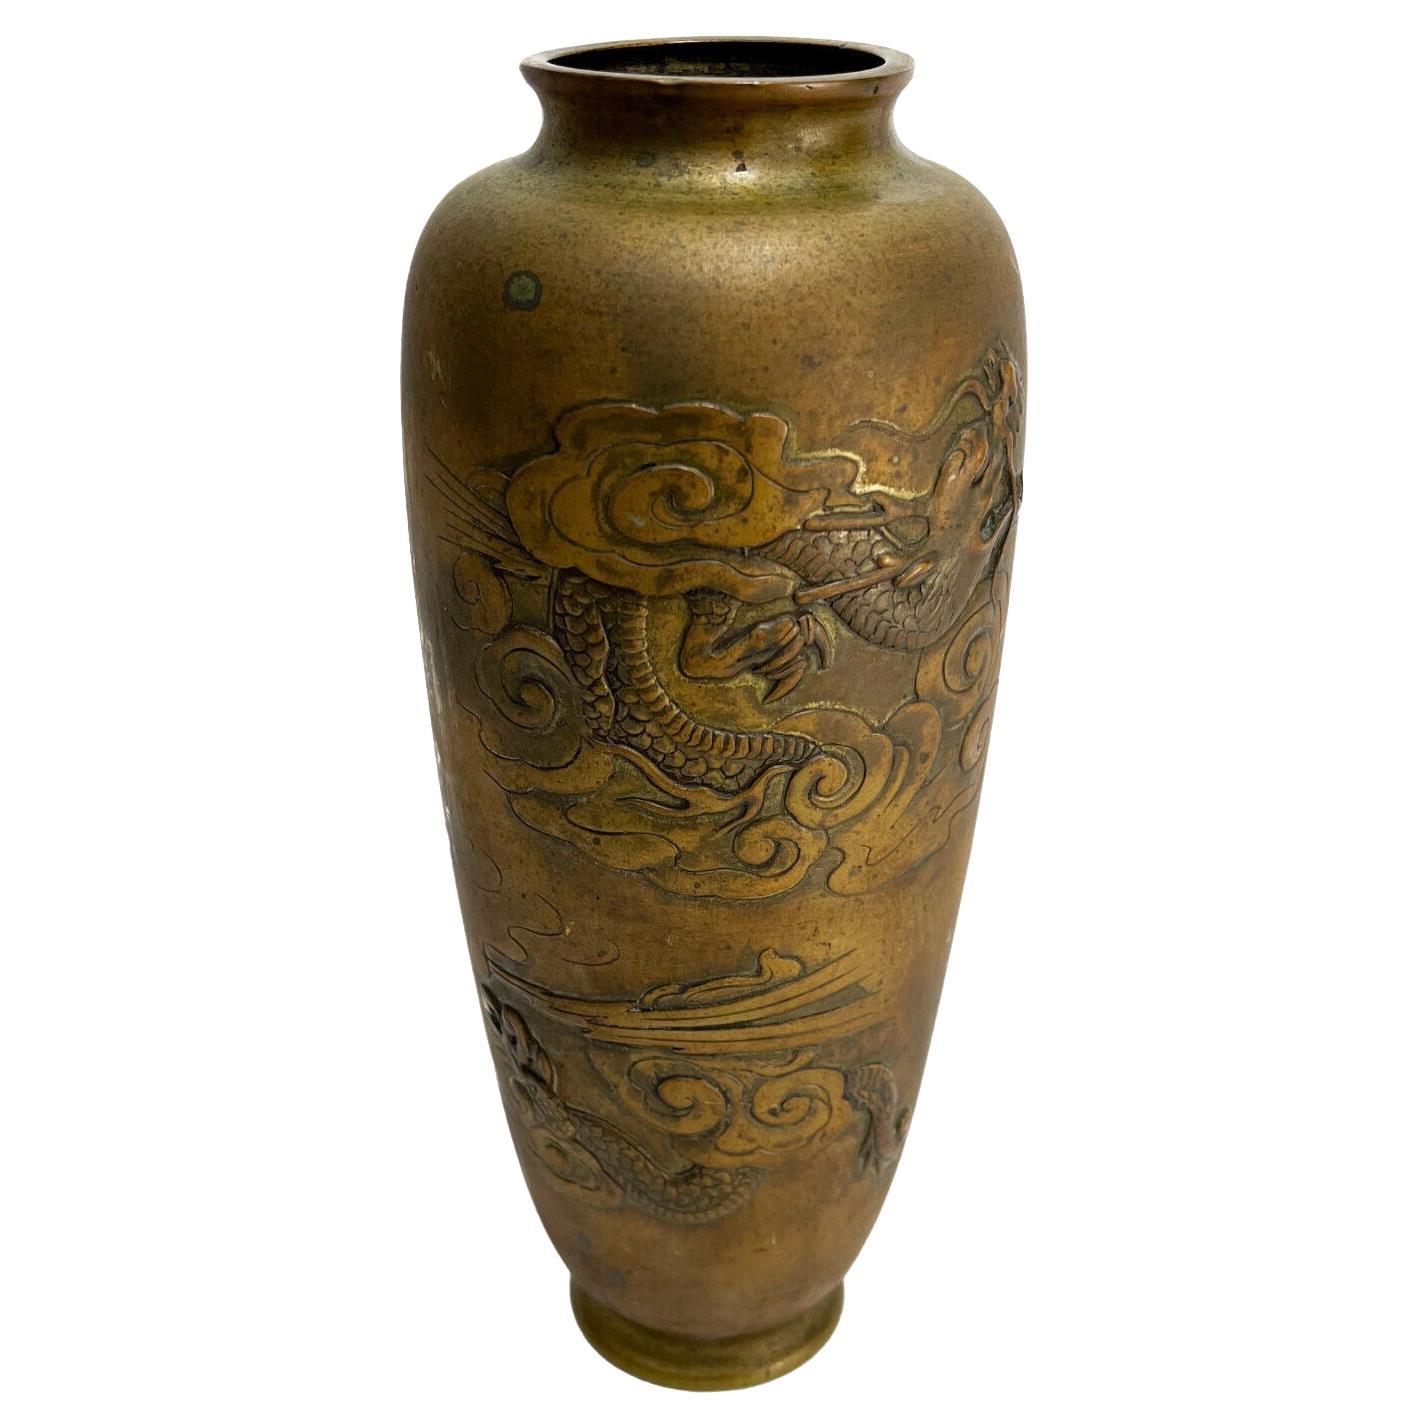  Chinesische geätzte figurale Drachenvase aus Bronze